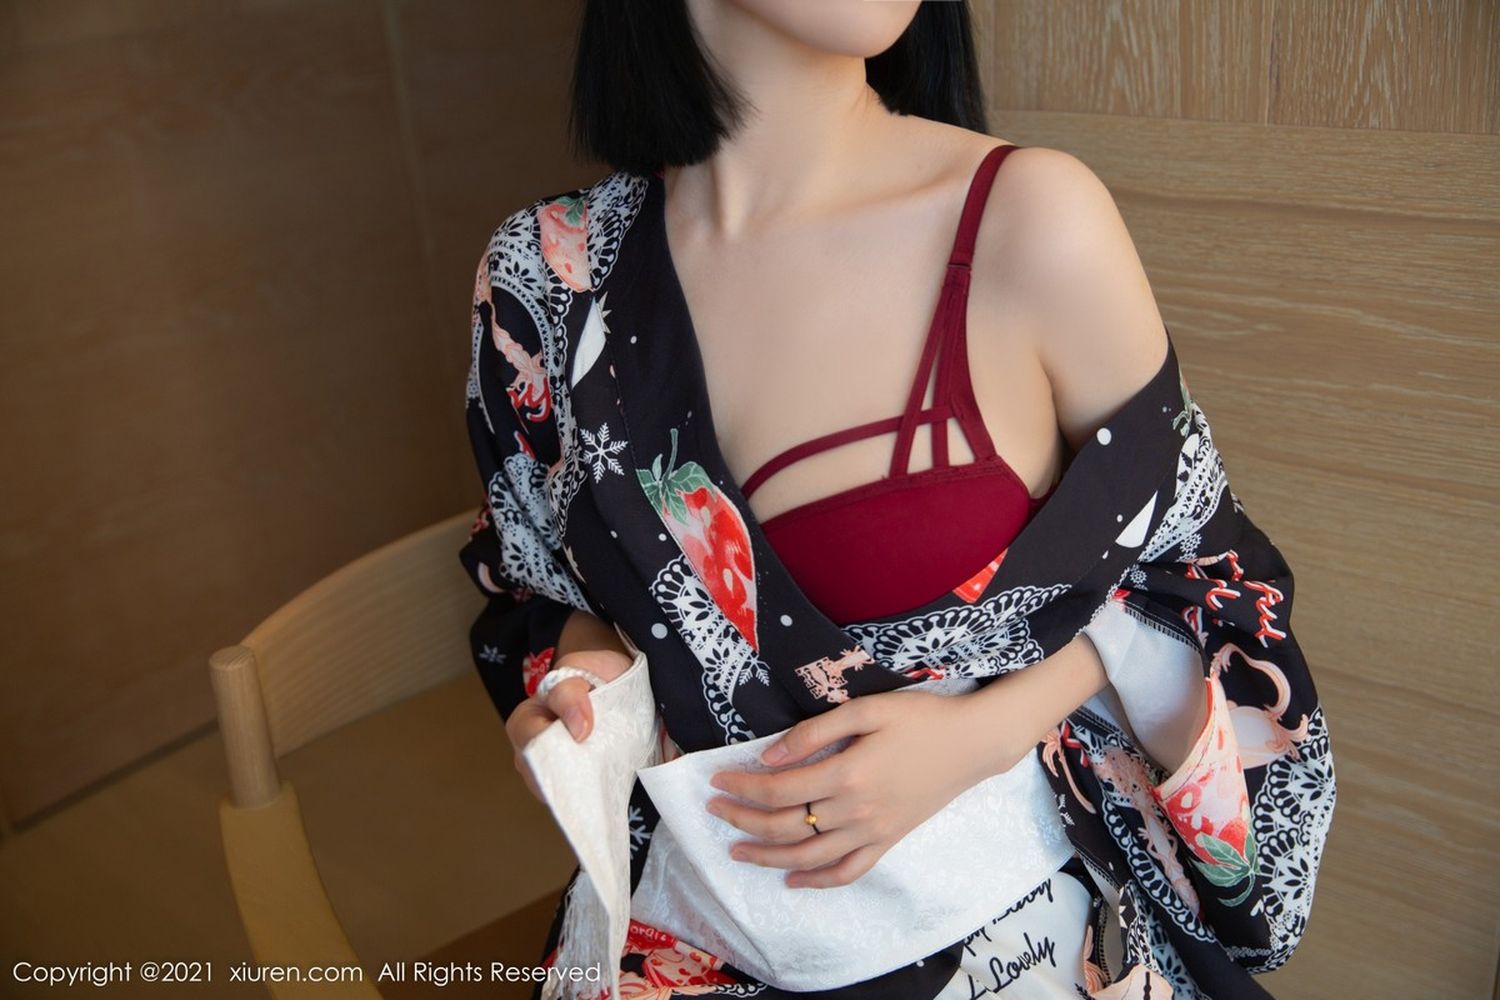 美女模特一颗甜蛋黄a日式和服与原色丝袜性感写真